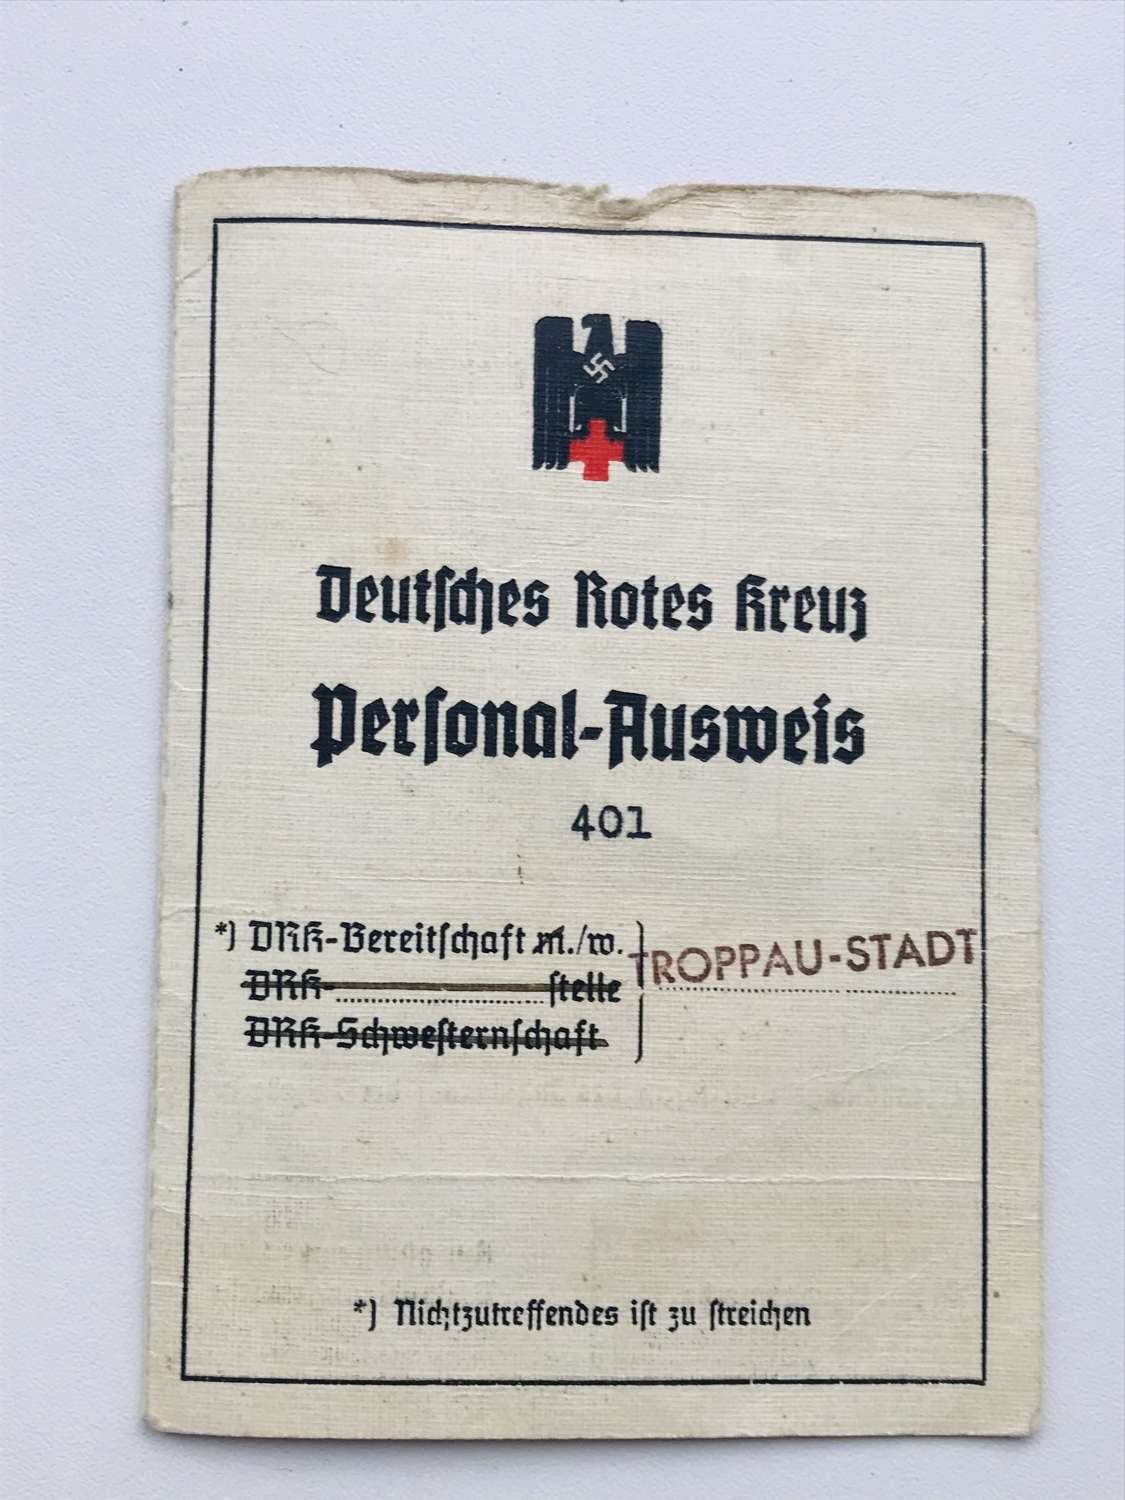 WW2 German Red Cross nurses pass